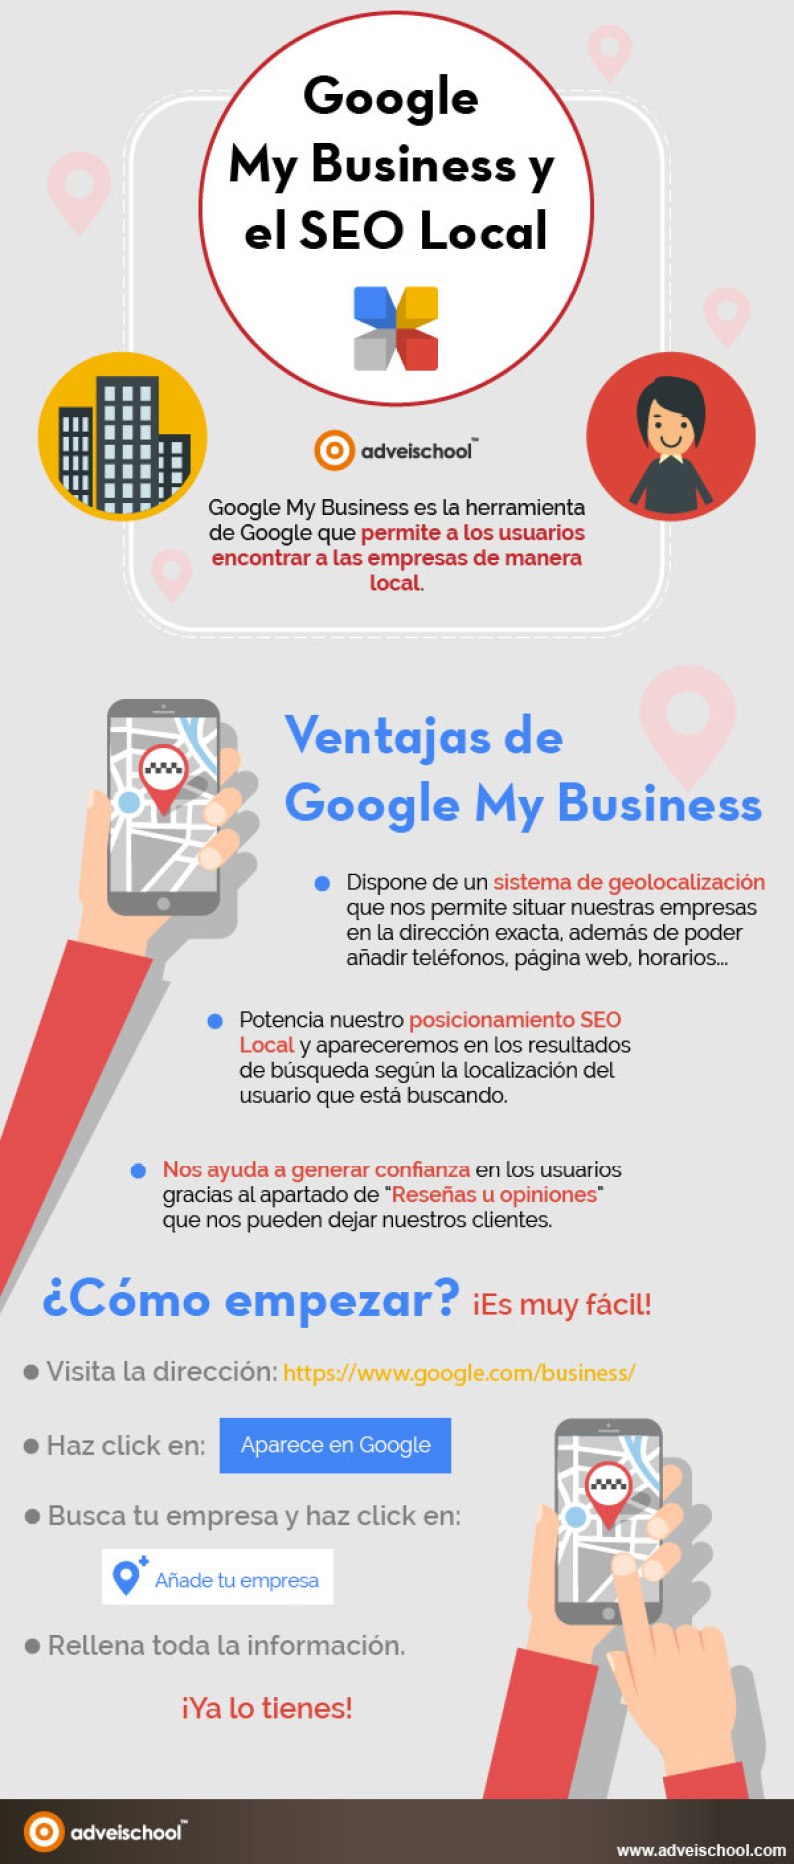 Google My Business y el SEO Local